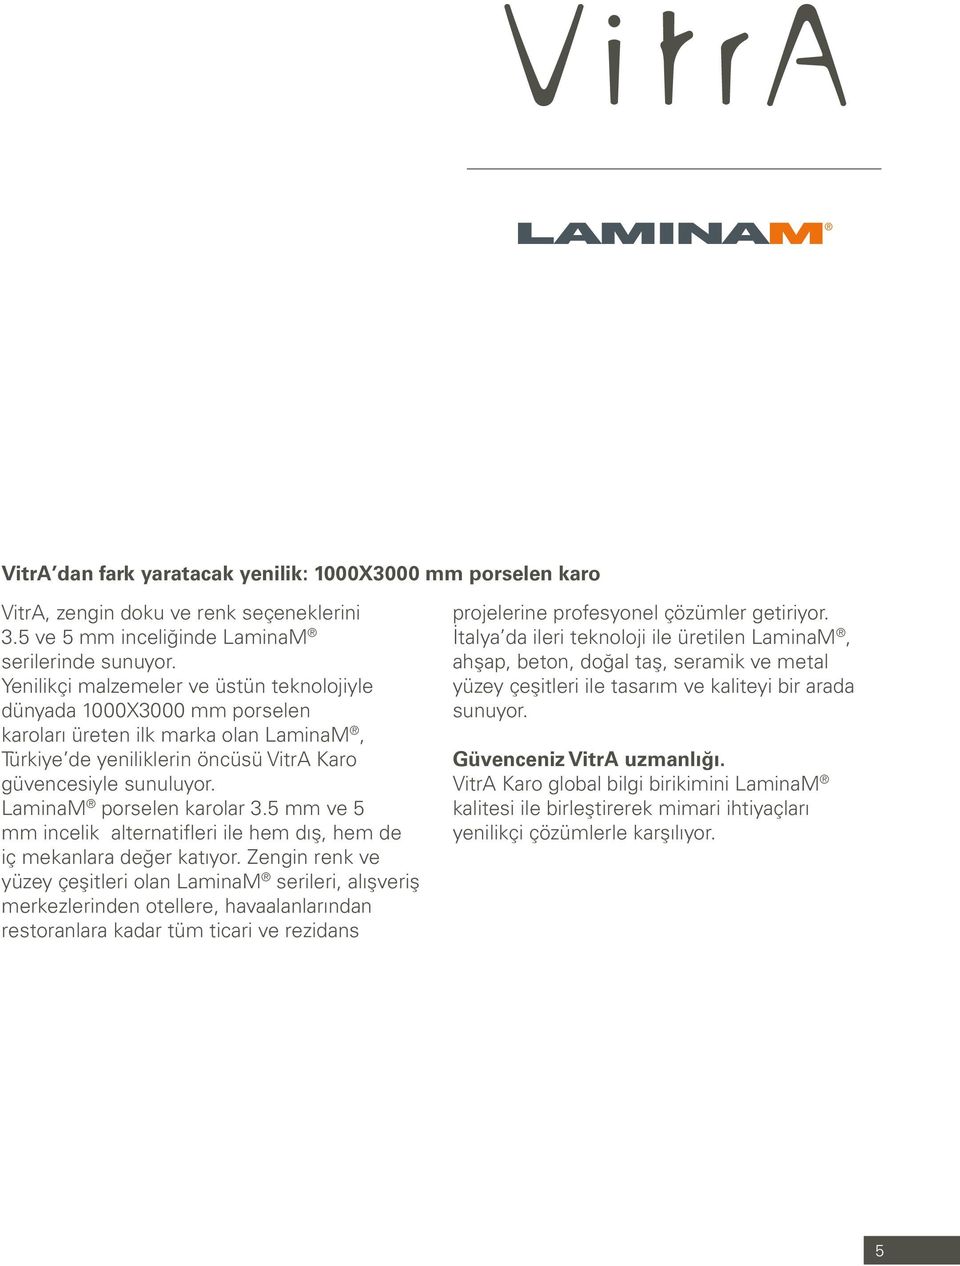 LaminaM porselen karolar 3.5 mm ve 5 mm incelik alternatifleri ile hem dış, hem de iç mekanlara değer katıyor.